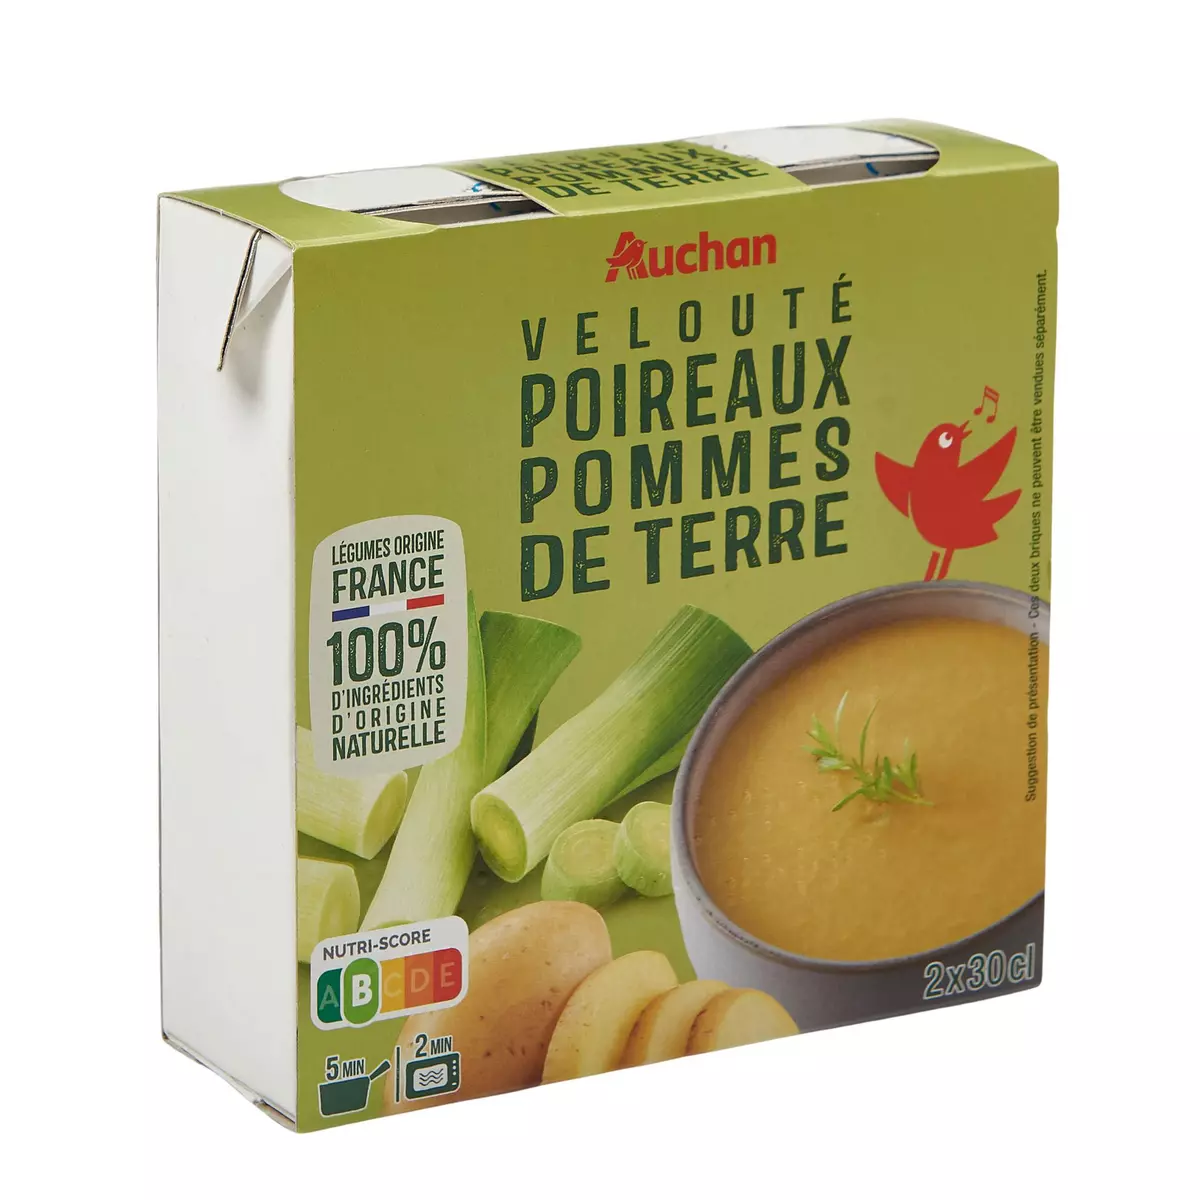 AUCHAN Soupe veloutée poireaux pommes de terre 2 briques 2x30cl